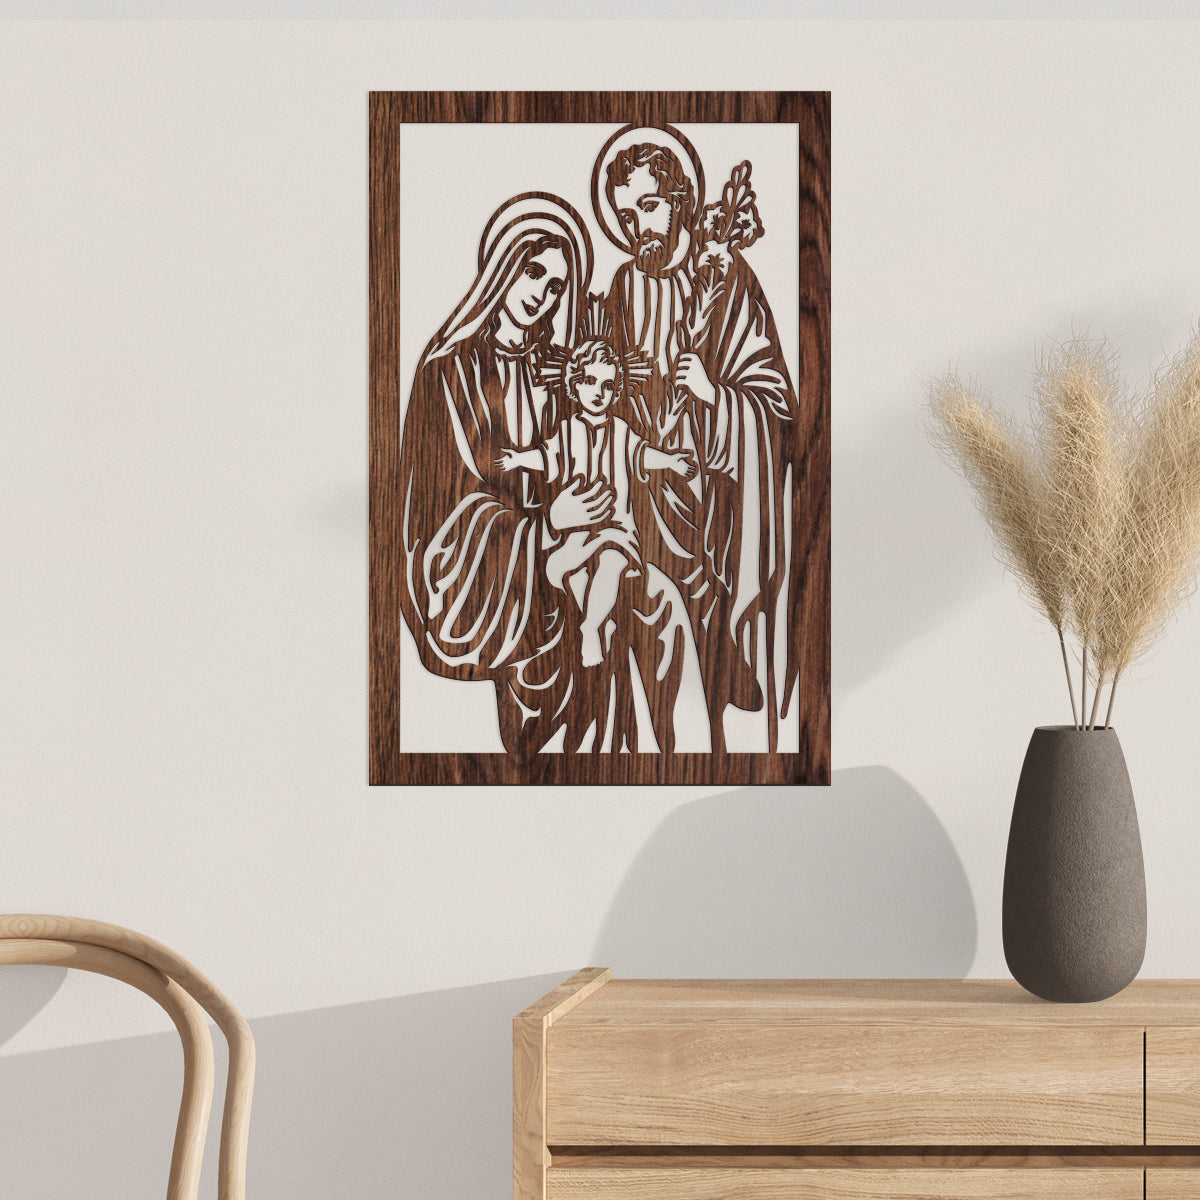 Sagrada familia - Cuadros de imágenes religiosas – TODO LÁSER Y 3D